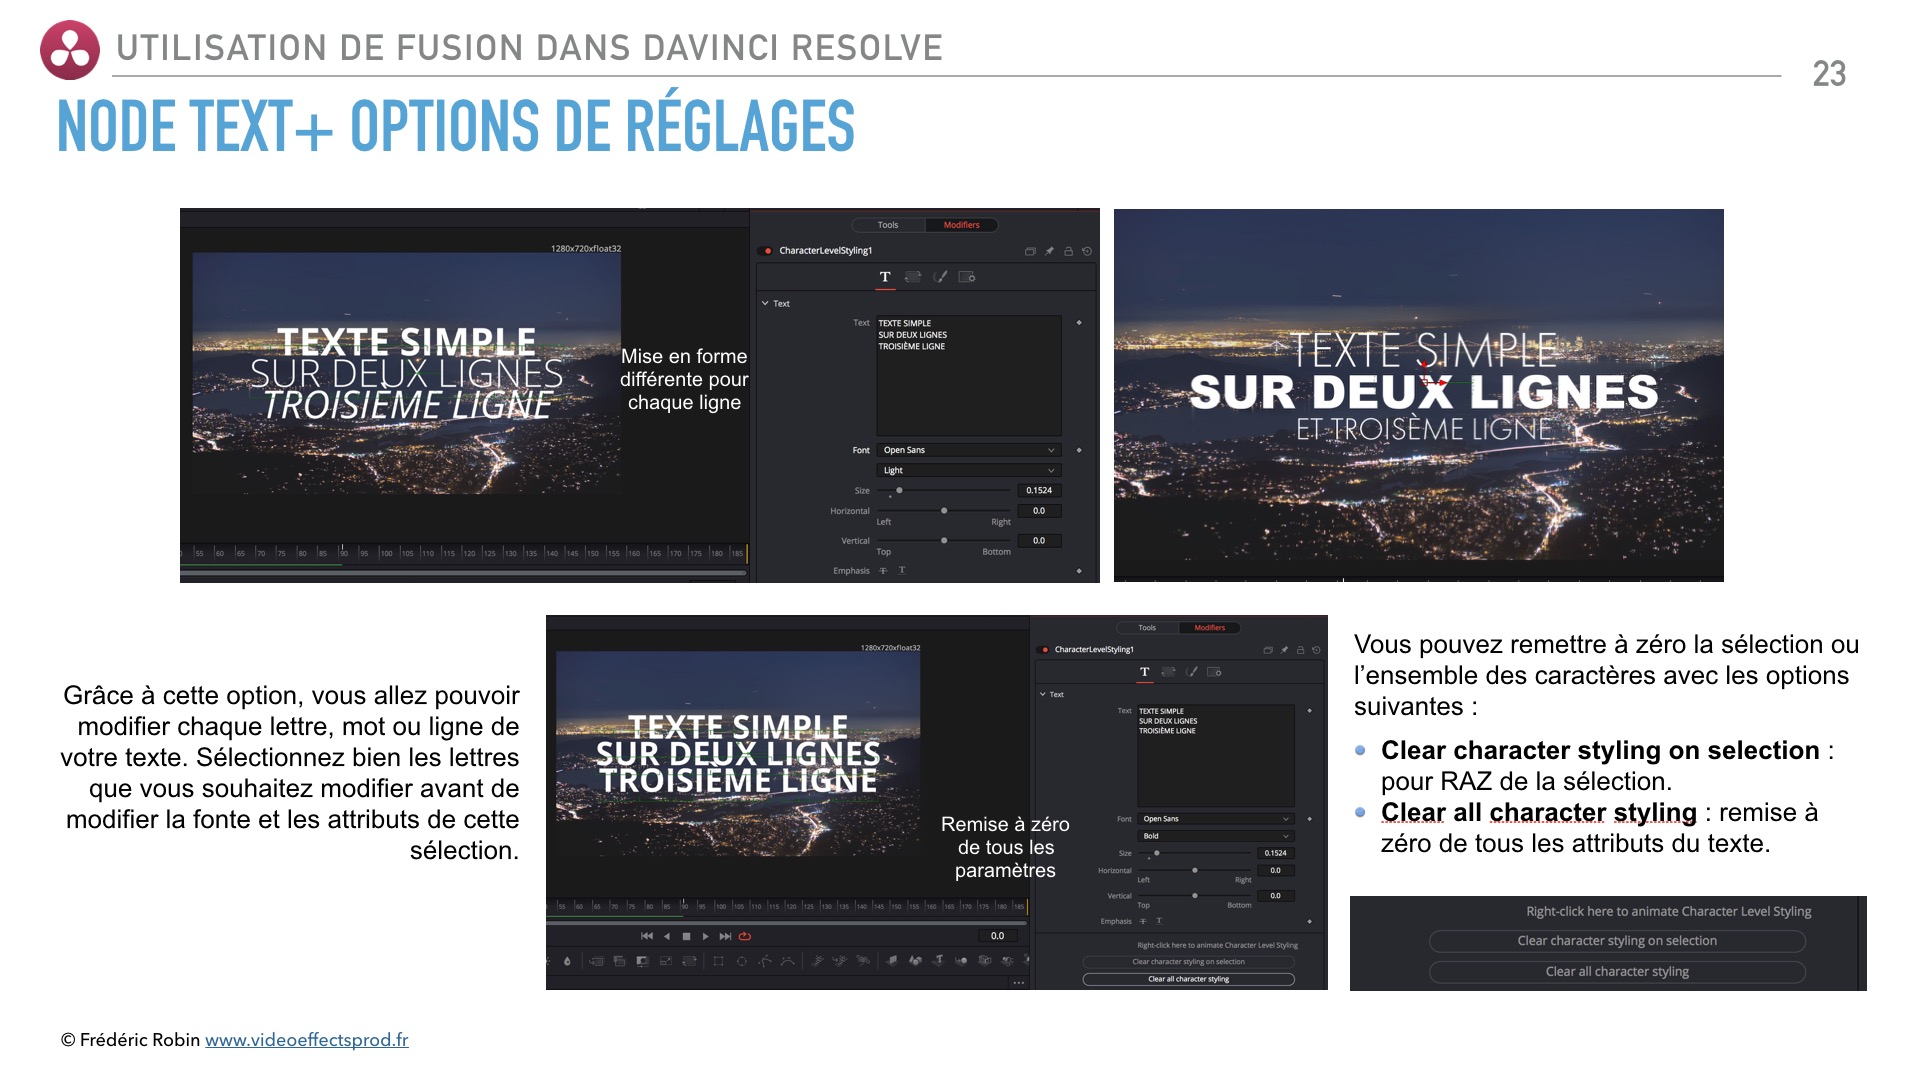 Utiliser Fusion dans DaVinci Resolve : PDF de formation en français